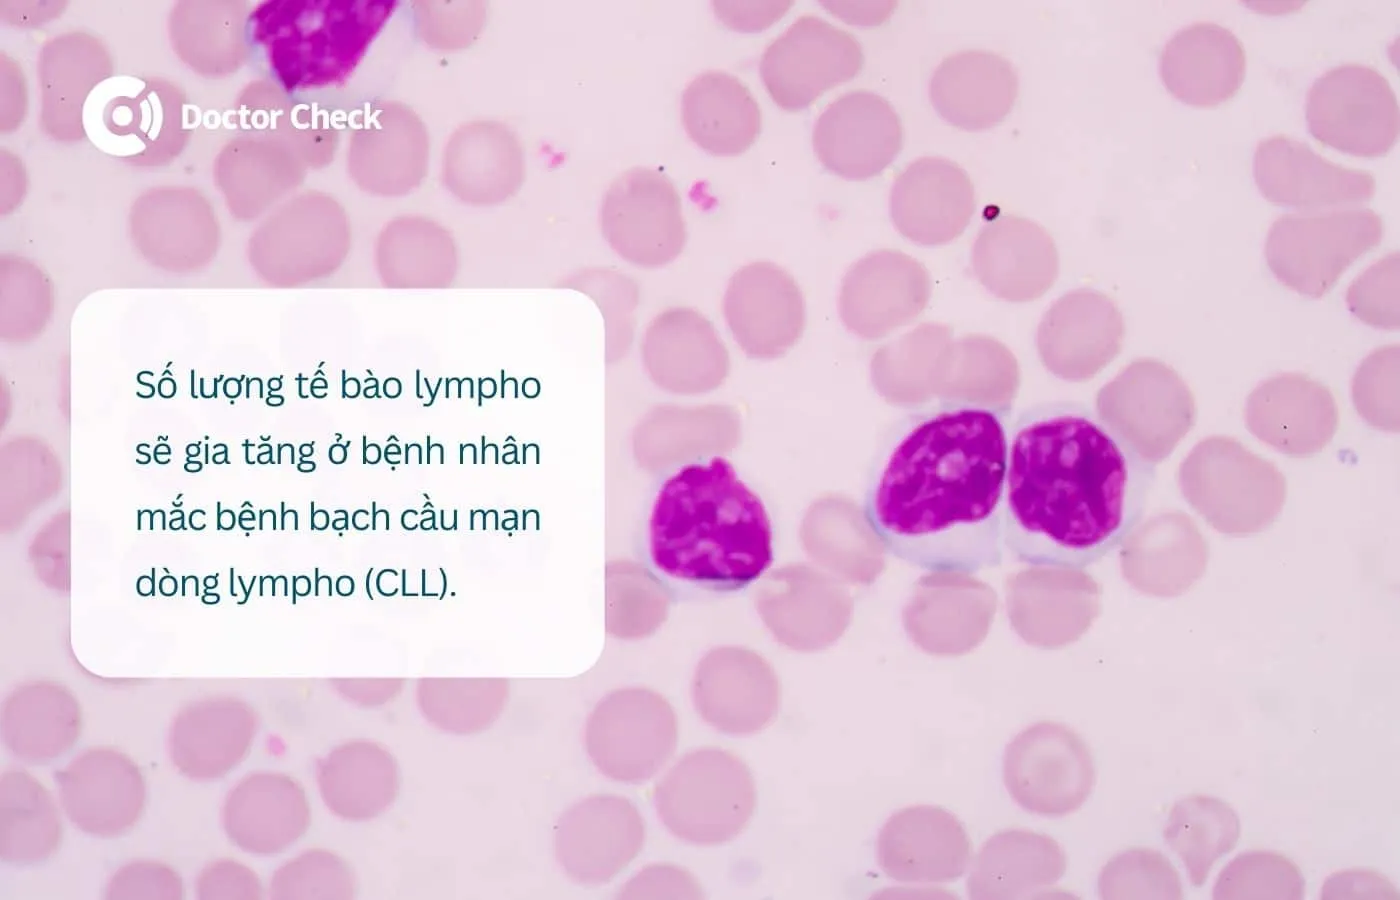 Số lượng tế bào lympho tăng ở bệnh nhân CLL